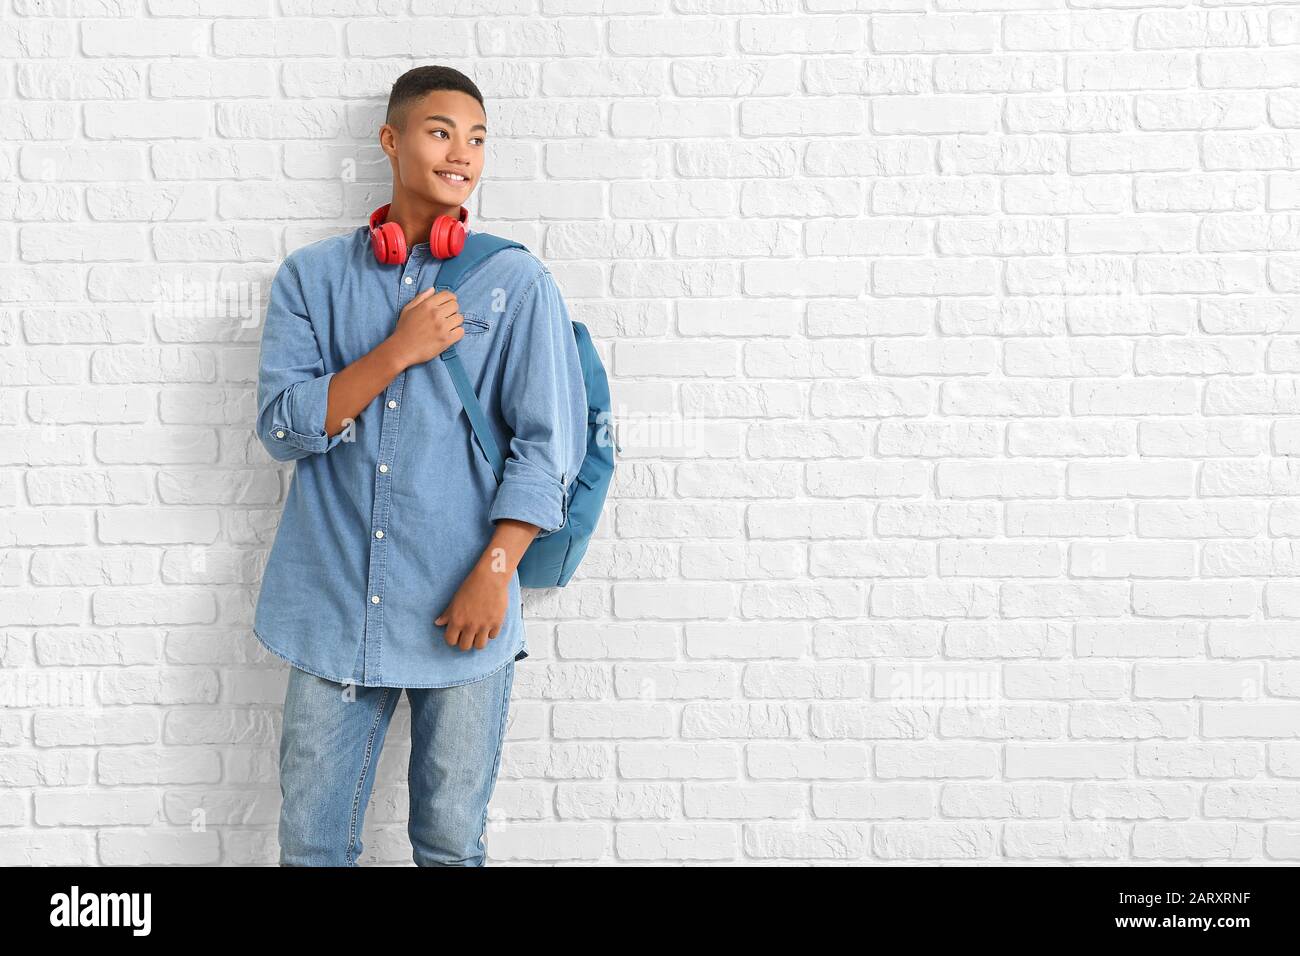 Porträt eines afroamerikanischen Teenager-Schuljungen auf Backstein-Hintergrund Stockfoto